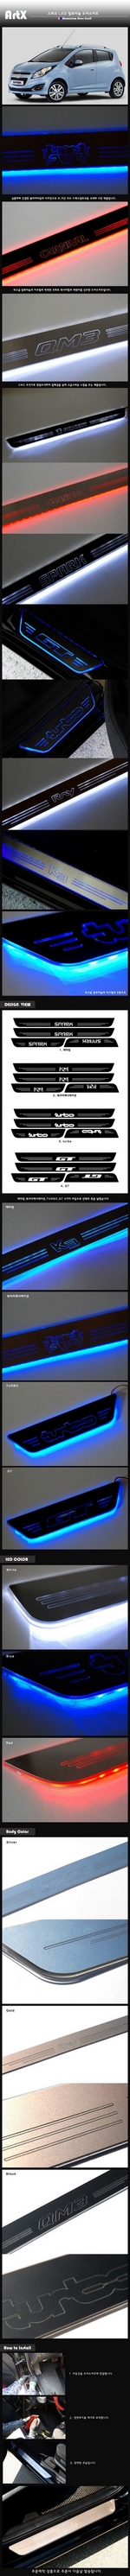 Накладки на пороги алюминиевые с подсветкой (вариант 2) ArtX Chevrolet Spark 2009-2019